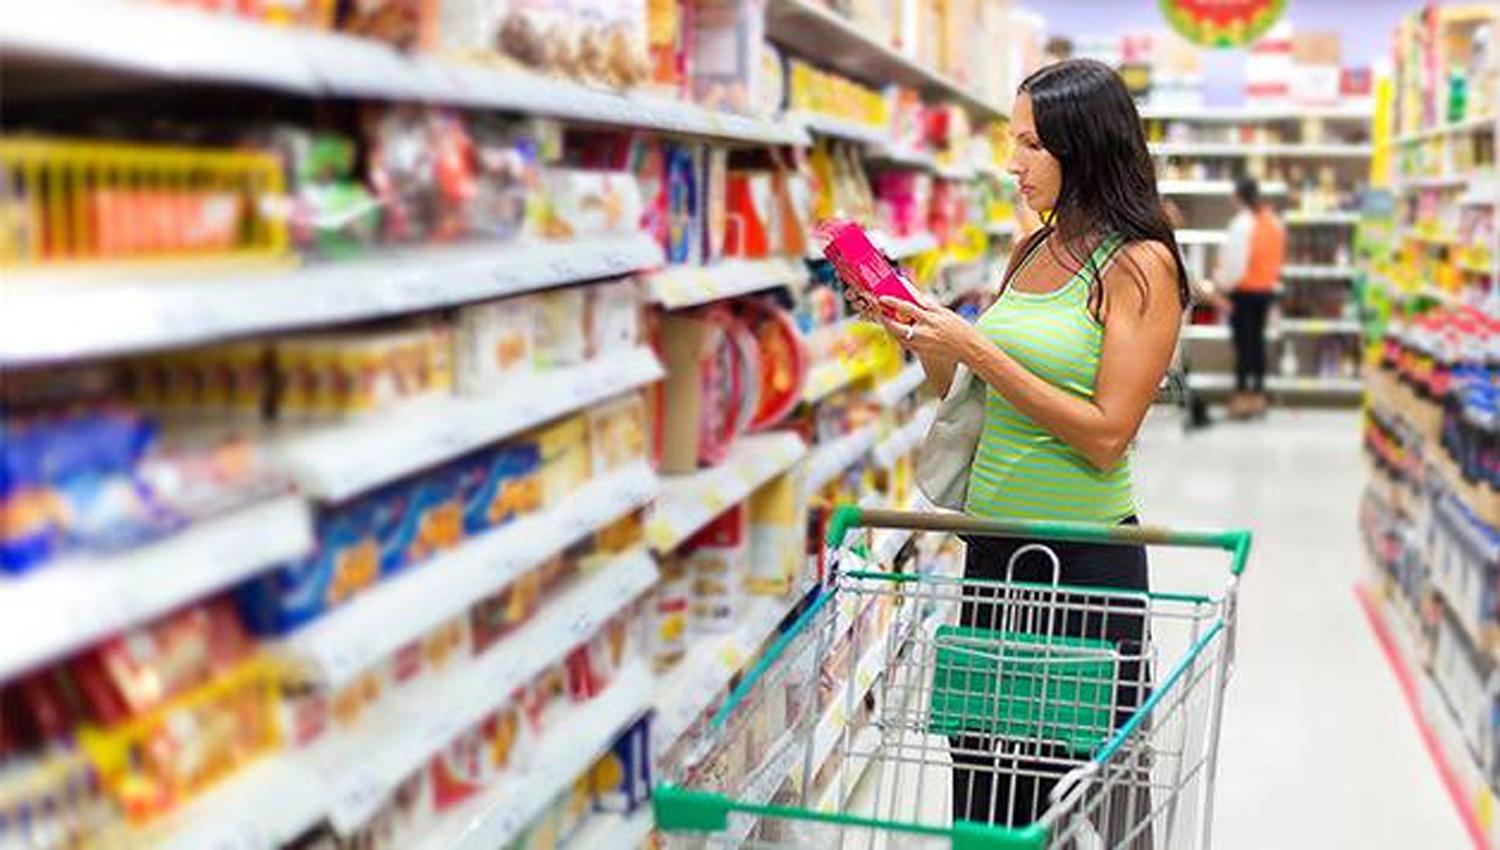 Las ventas en supermercados crecieron el 1,1%